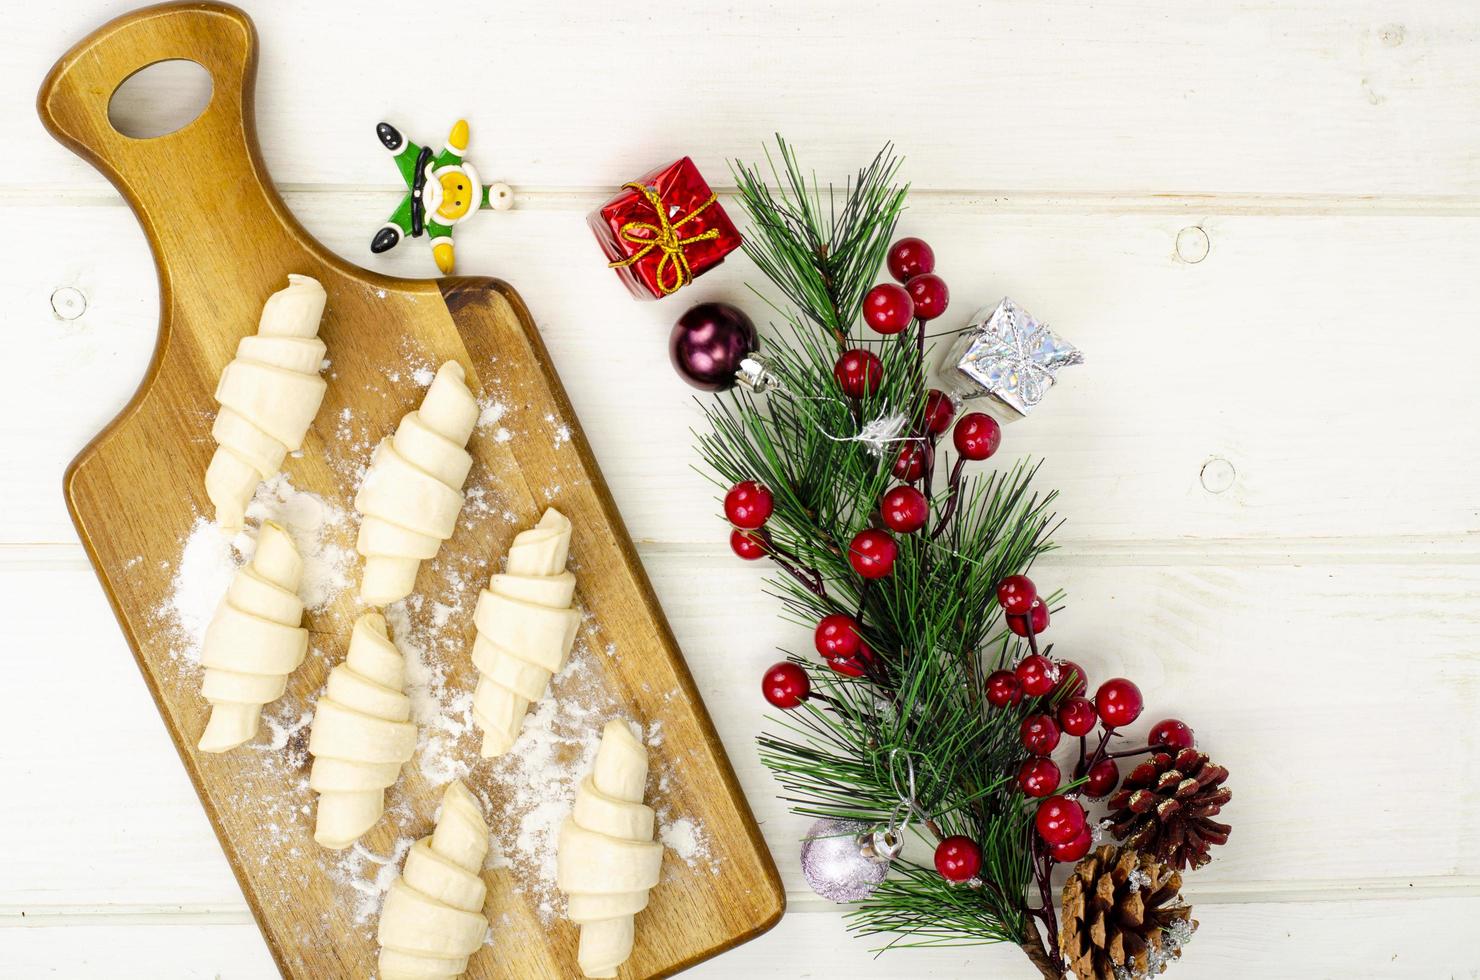 pasteles caseros de navidad, croissants en madera. foto de estudio